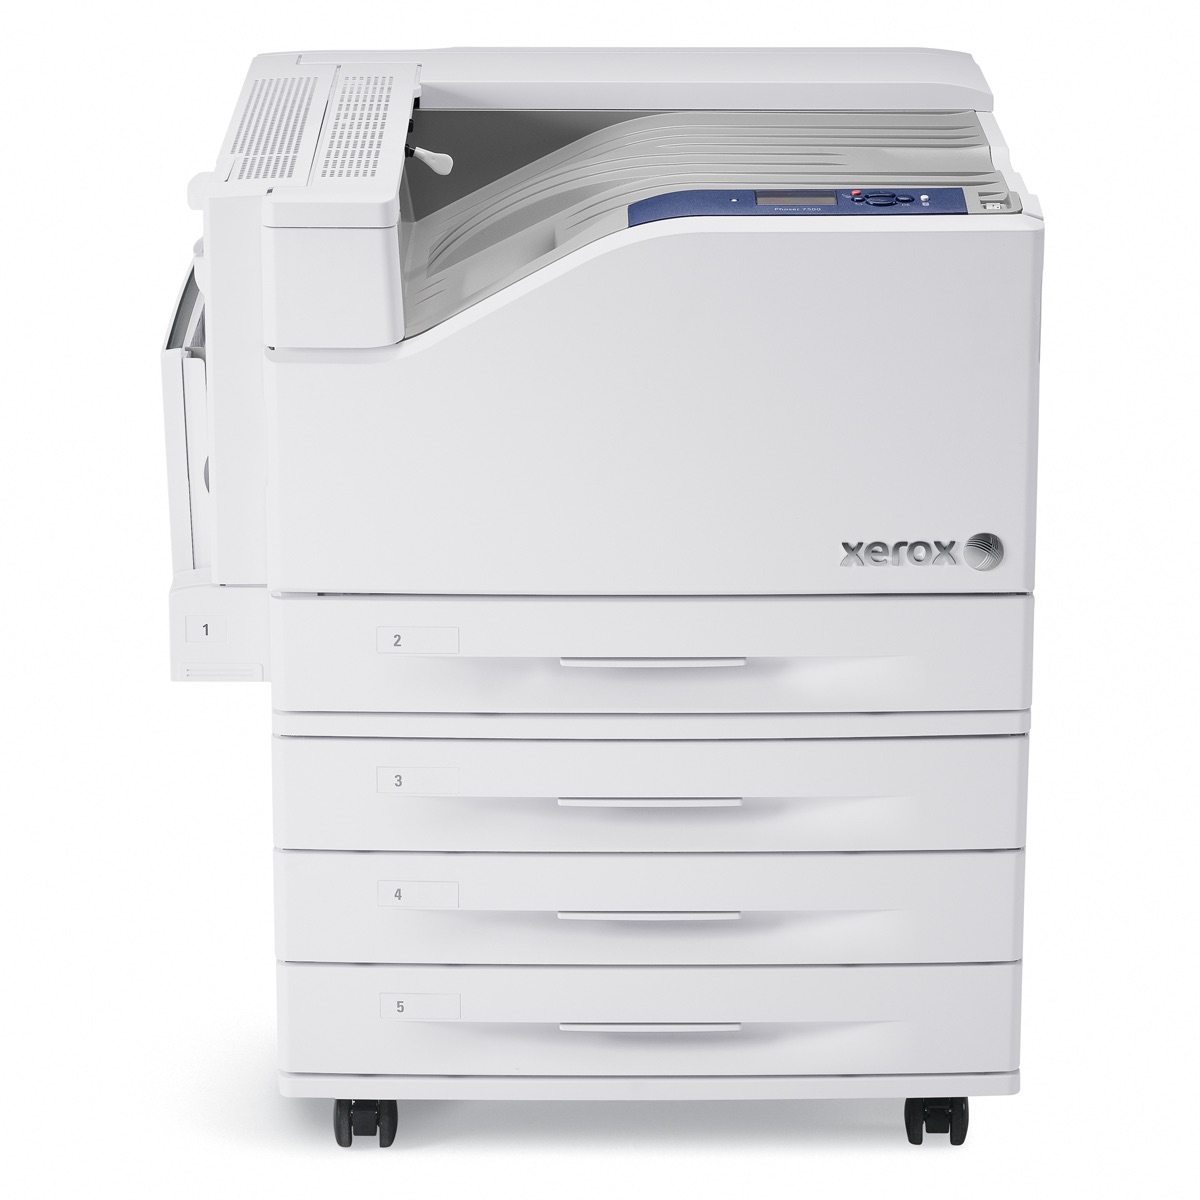 Xerox Printers:  The Xerox Phaser 7500DX Printer